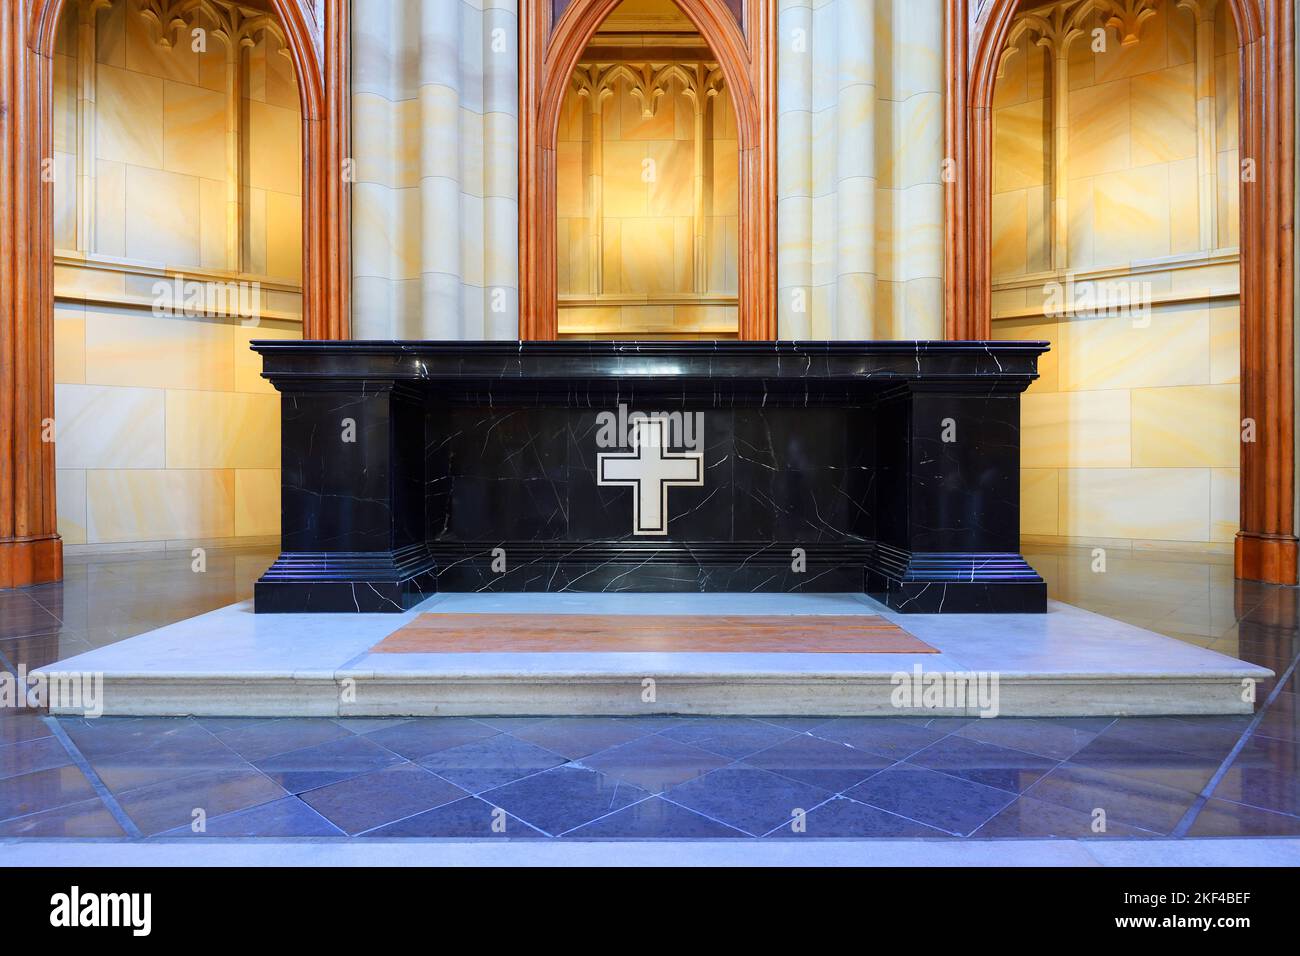 Altar, Friedrichswerdersche Kirche, Architek Carl Friedrich Schinkel, Berlin-Mitte, Deutschland, Baudenmal, Berliner Kirche, Stock Photo